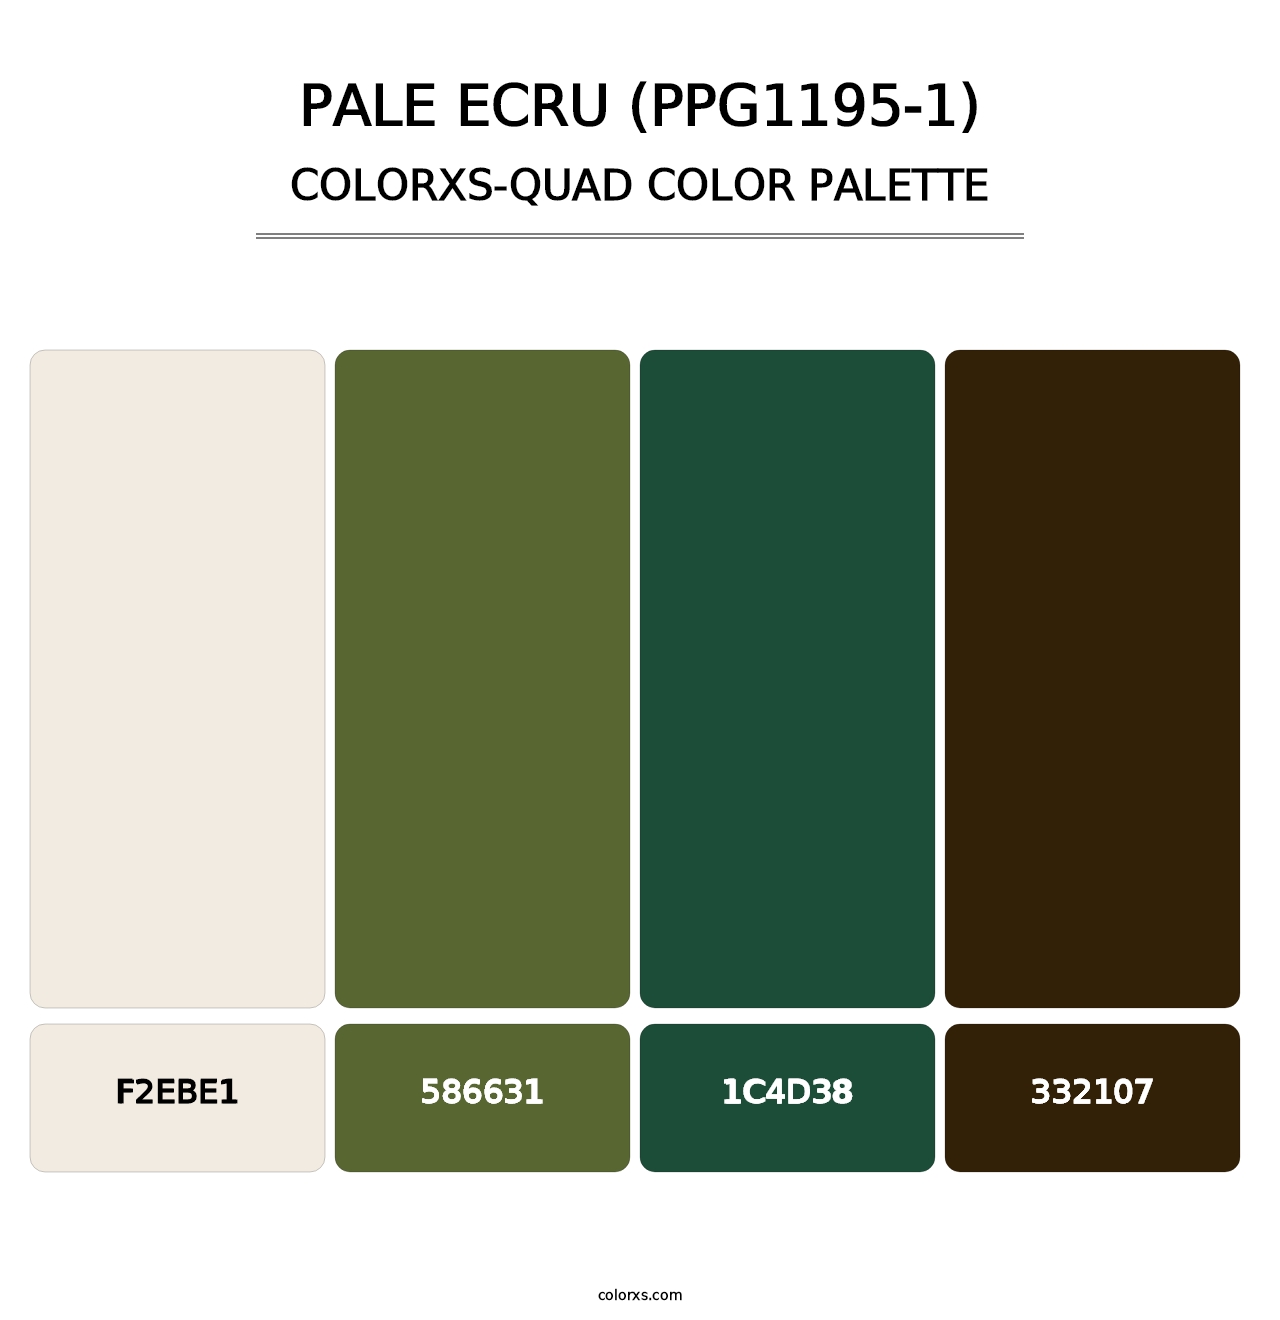 Pale Ecru (PPG1195-1) - Colorxs Quad Palette